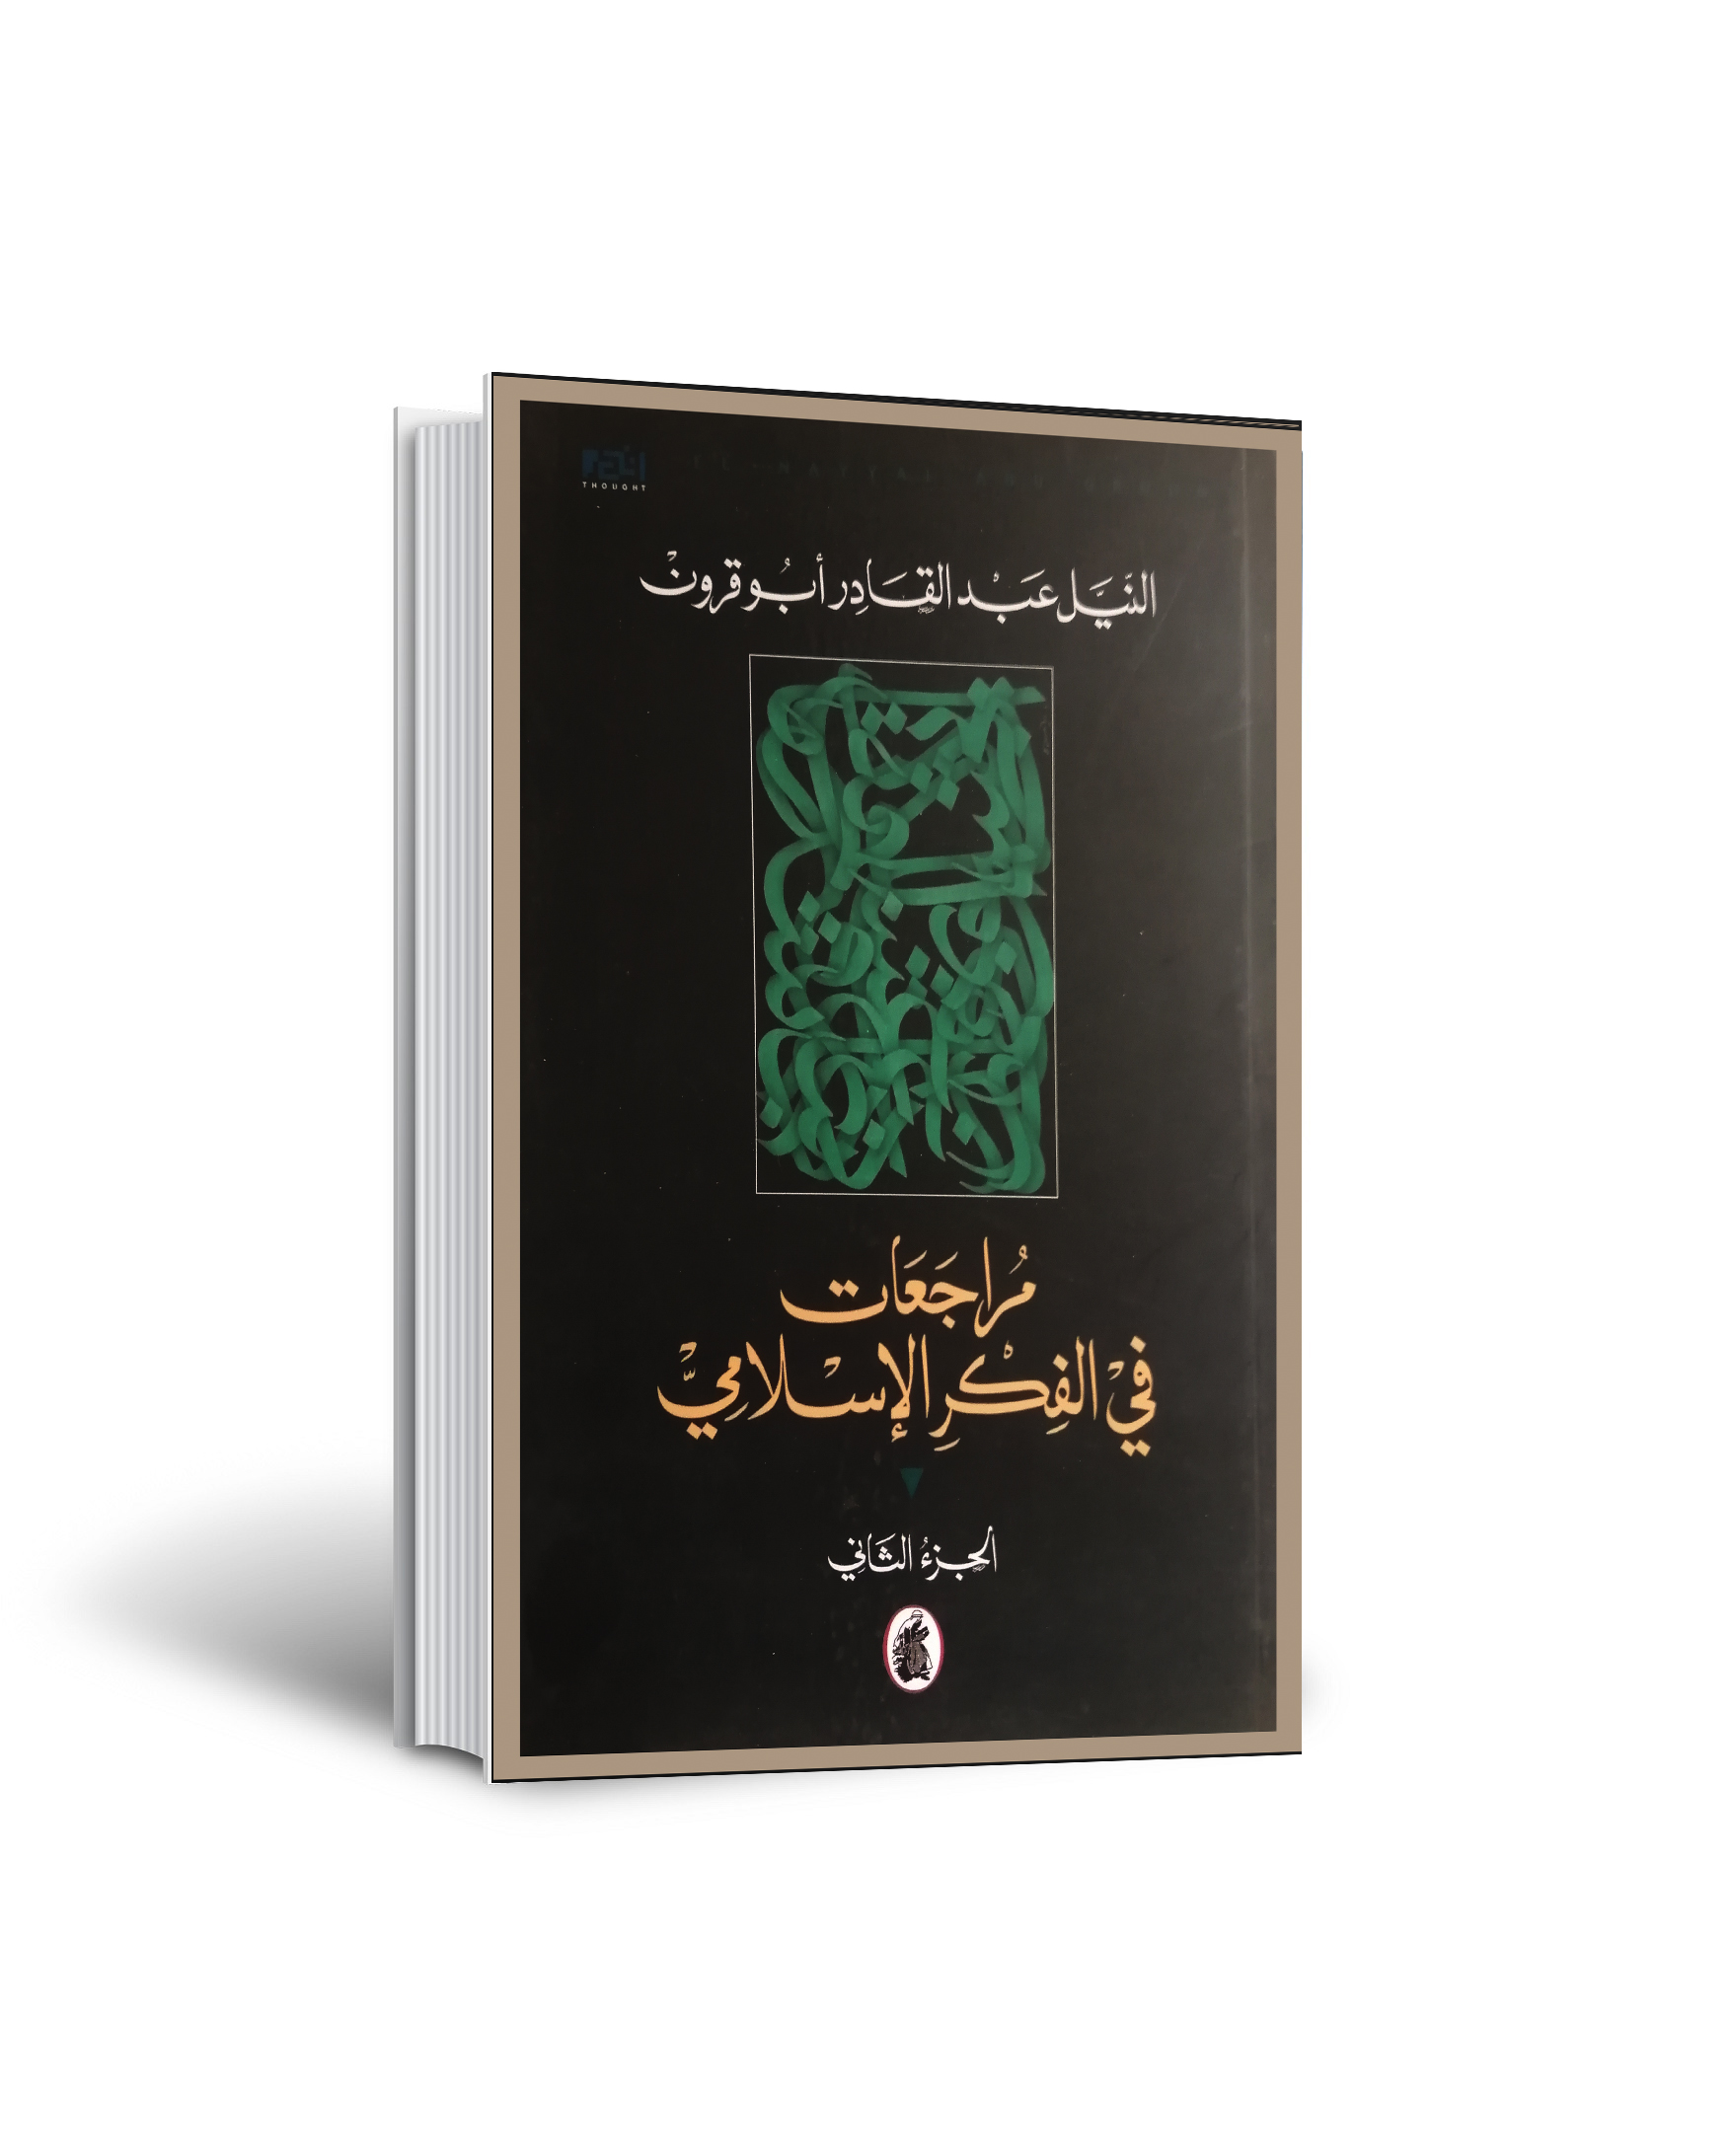 مراجعات في الفكر الاسلامي-الجزء الثاني